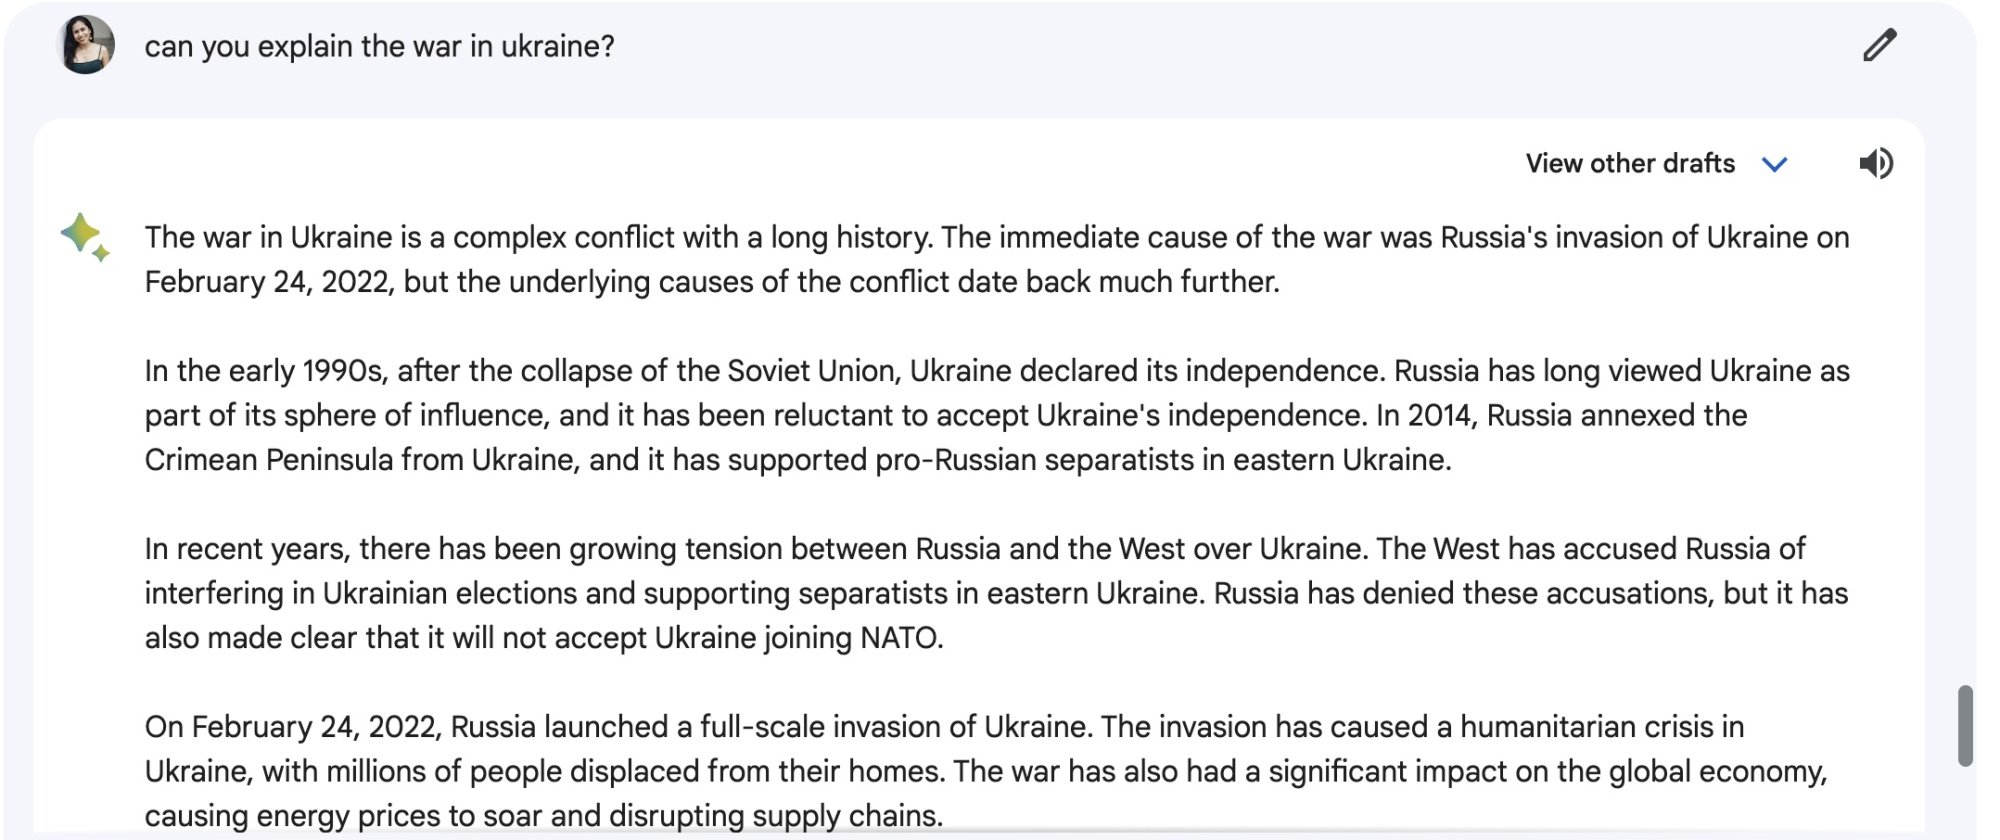 Une capture d'écran de Google Bard répondant à une question sur l'Ukraine et la Russie.